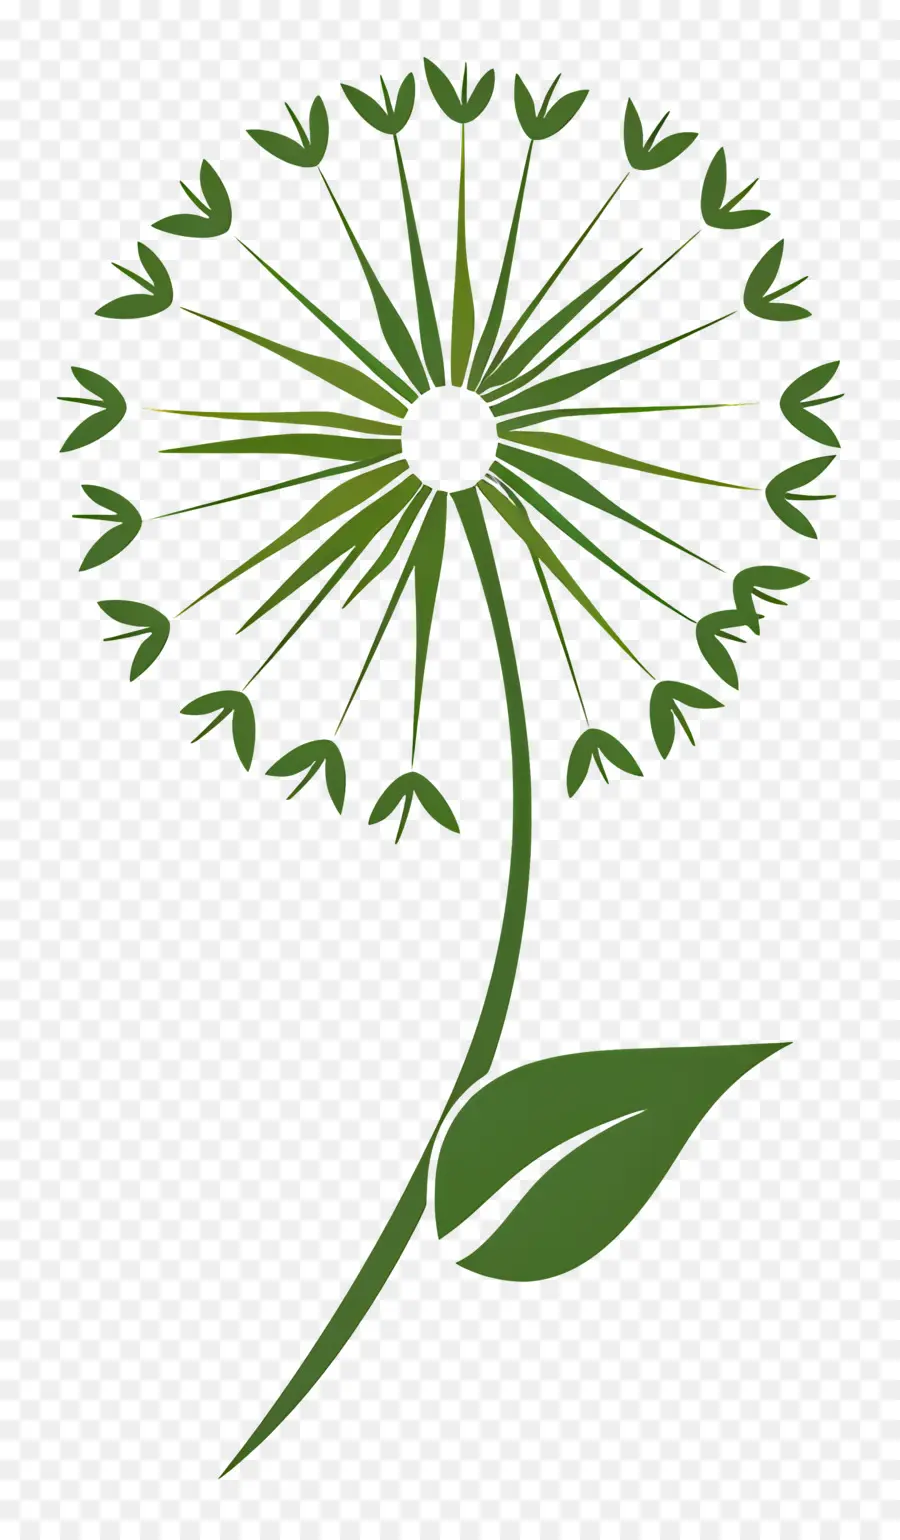 hoa bồ công anh em hoa cánh hoa trắng lá xanh lá cây - Hình minh họa đơn giản của hoa bồ công anh với lá